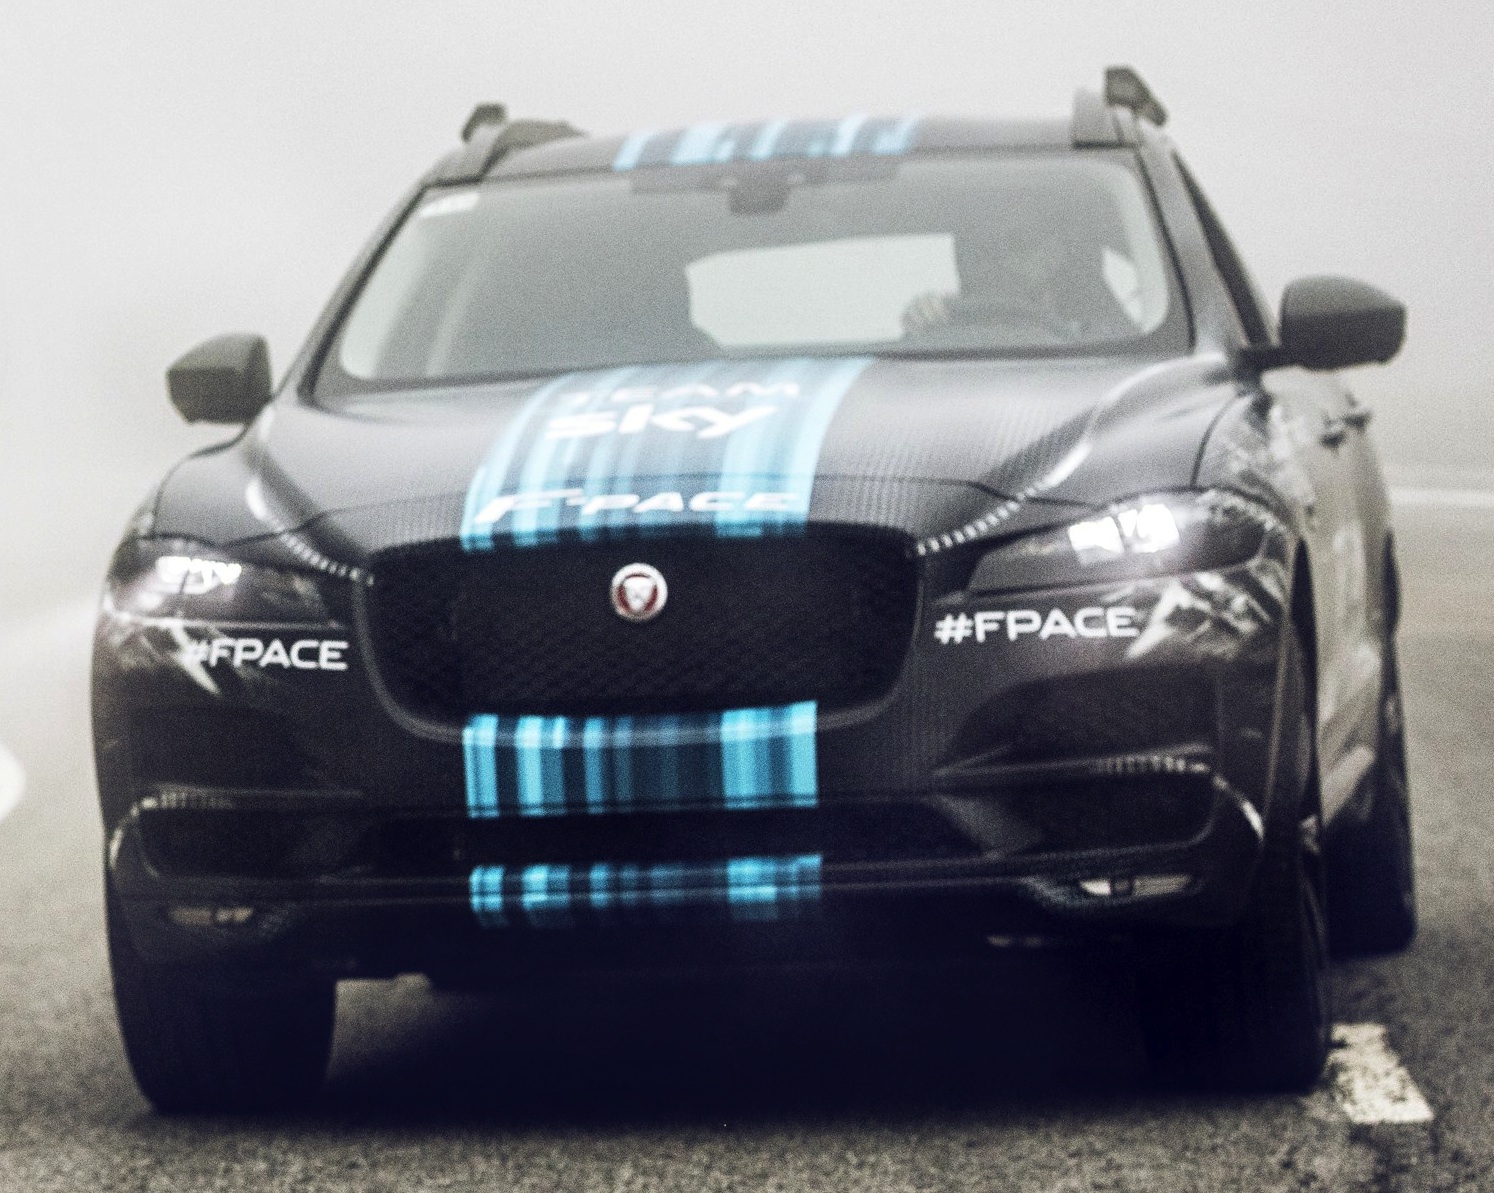 Jaguar F-Pace front-end Tour de France promotion image